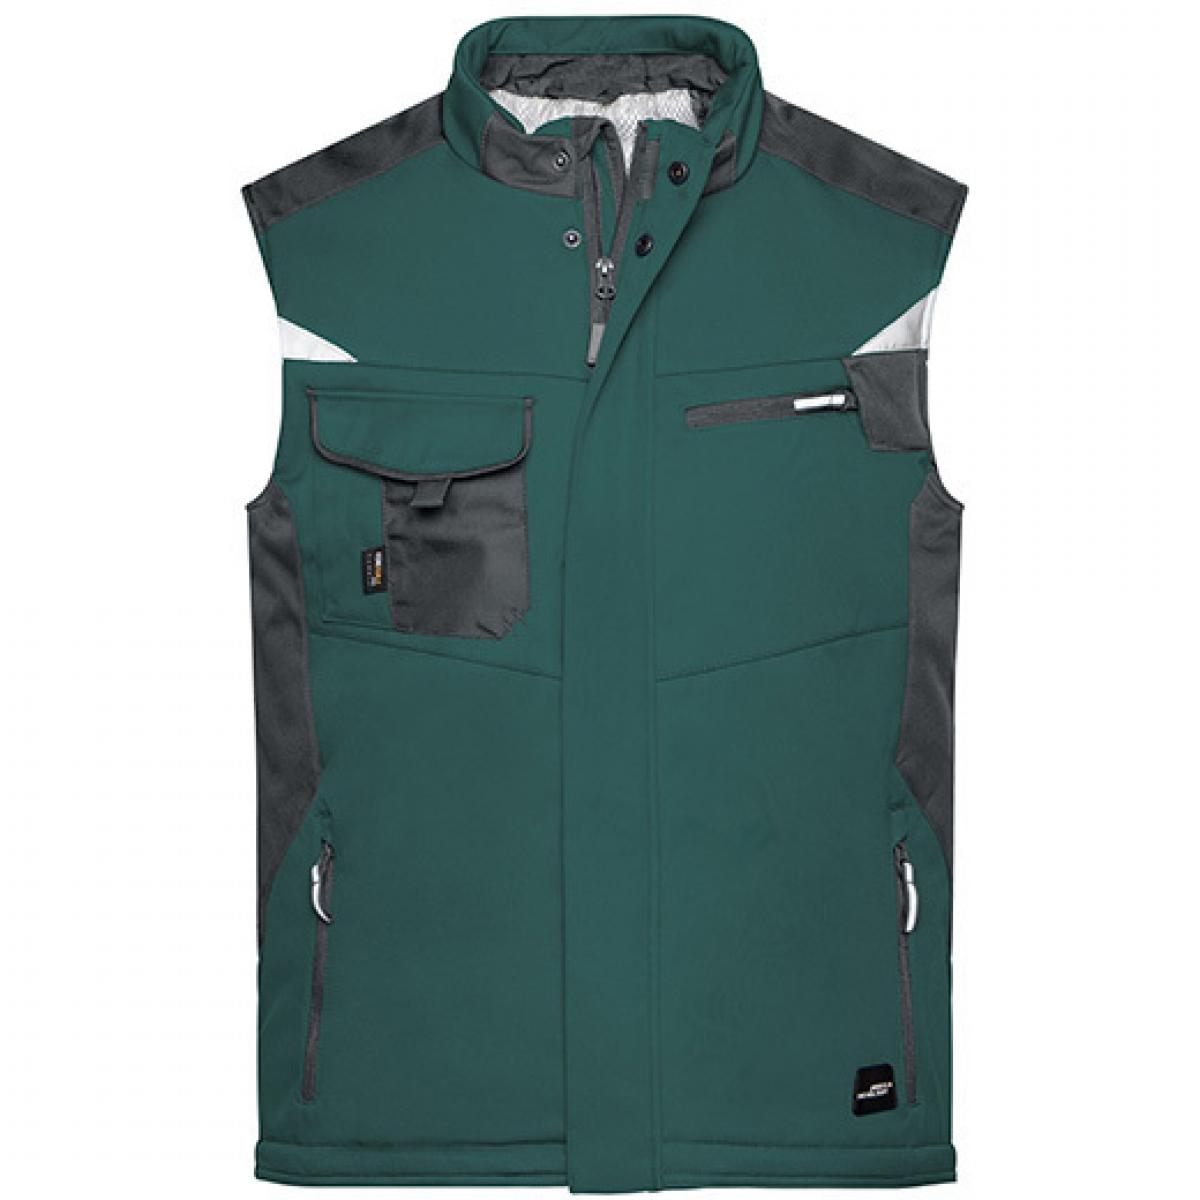 Hersteller: James+Nicholson Herstellernummer: JN825 Artikelbezeichnung: Herren Jacke, Craftsmen Softshell Vest -STRONG- Farbe: Dark Green/Black